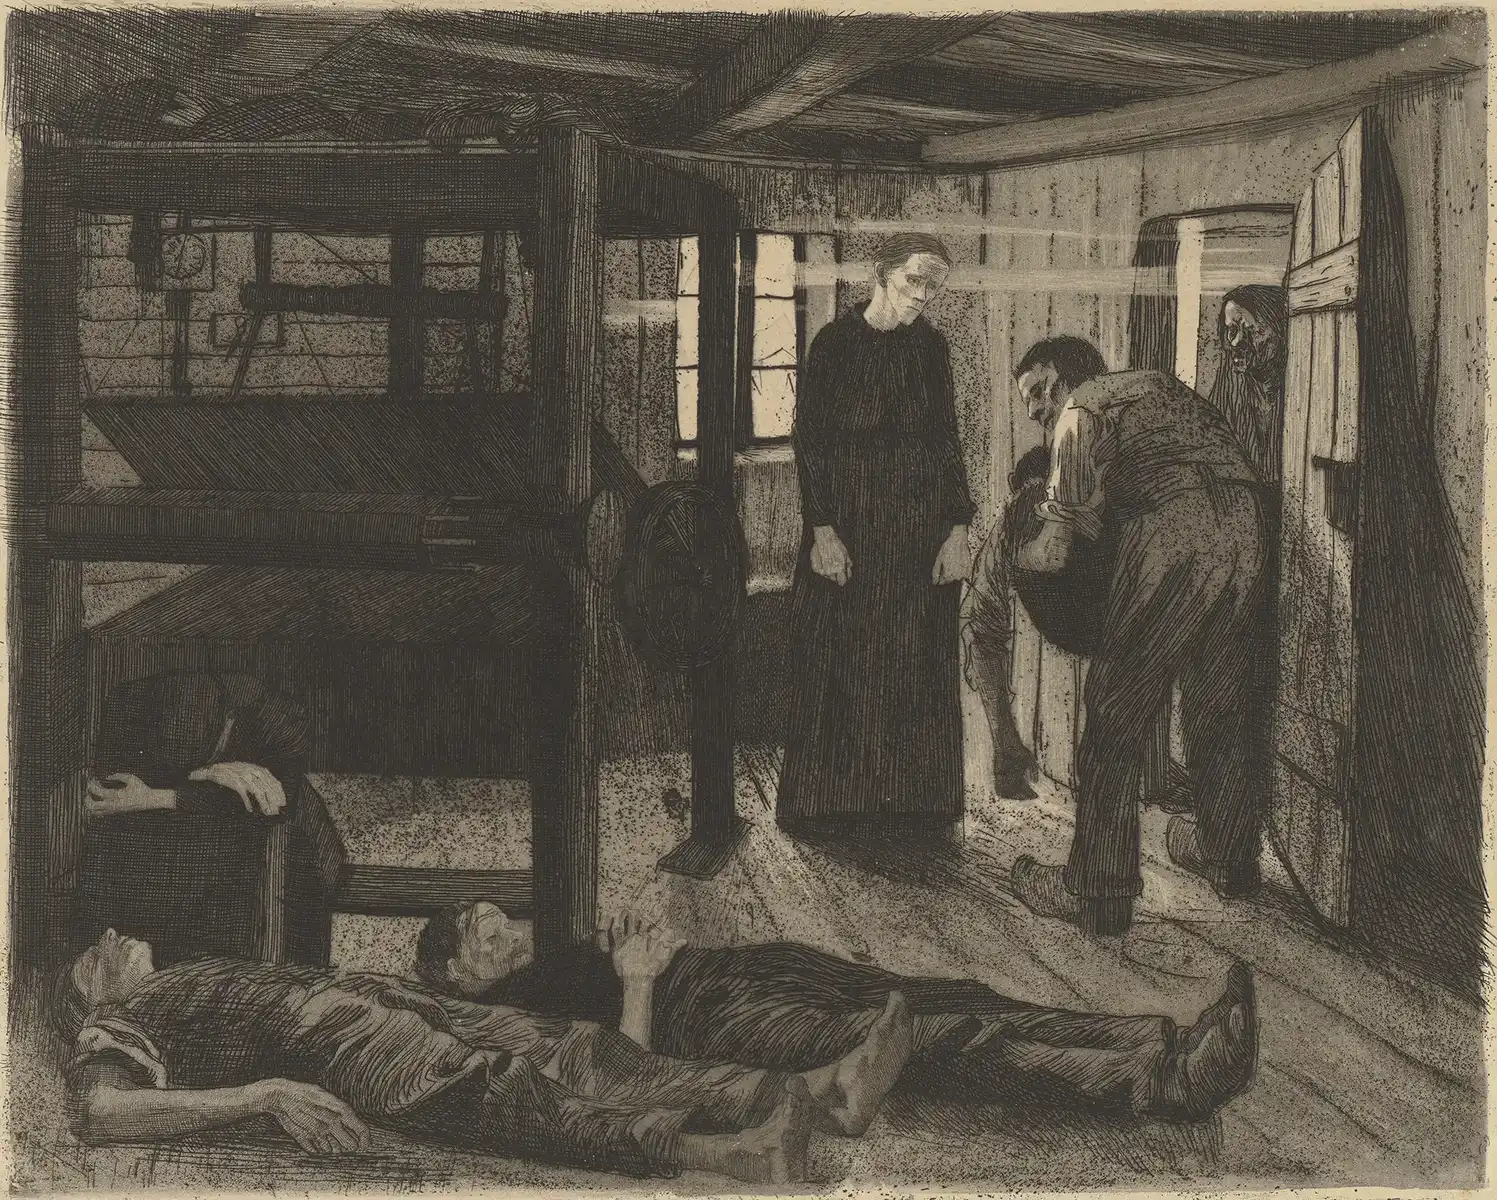 Käthe Kollwitz, End, sheet 6 from series A Weavers’ Revolt, 1893-1897